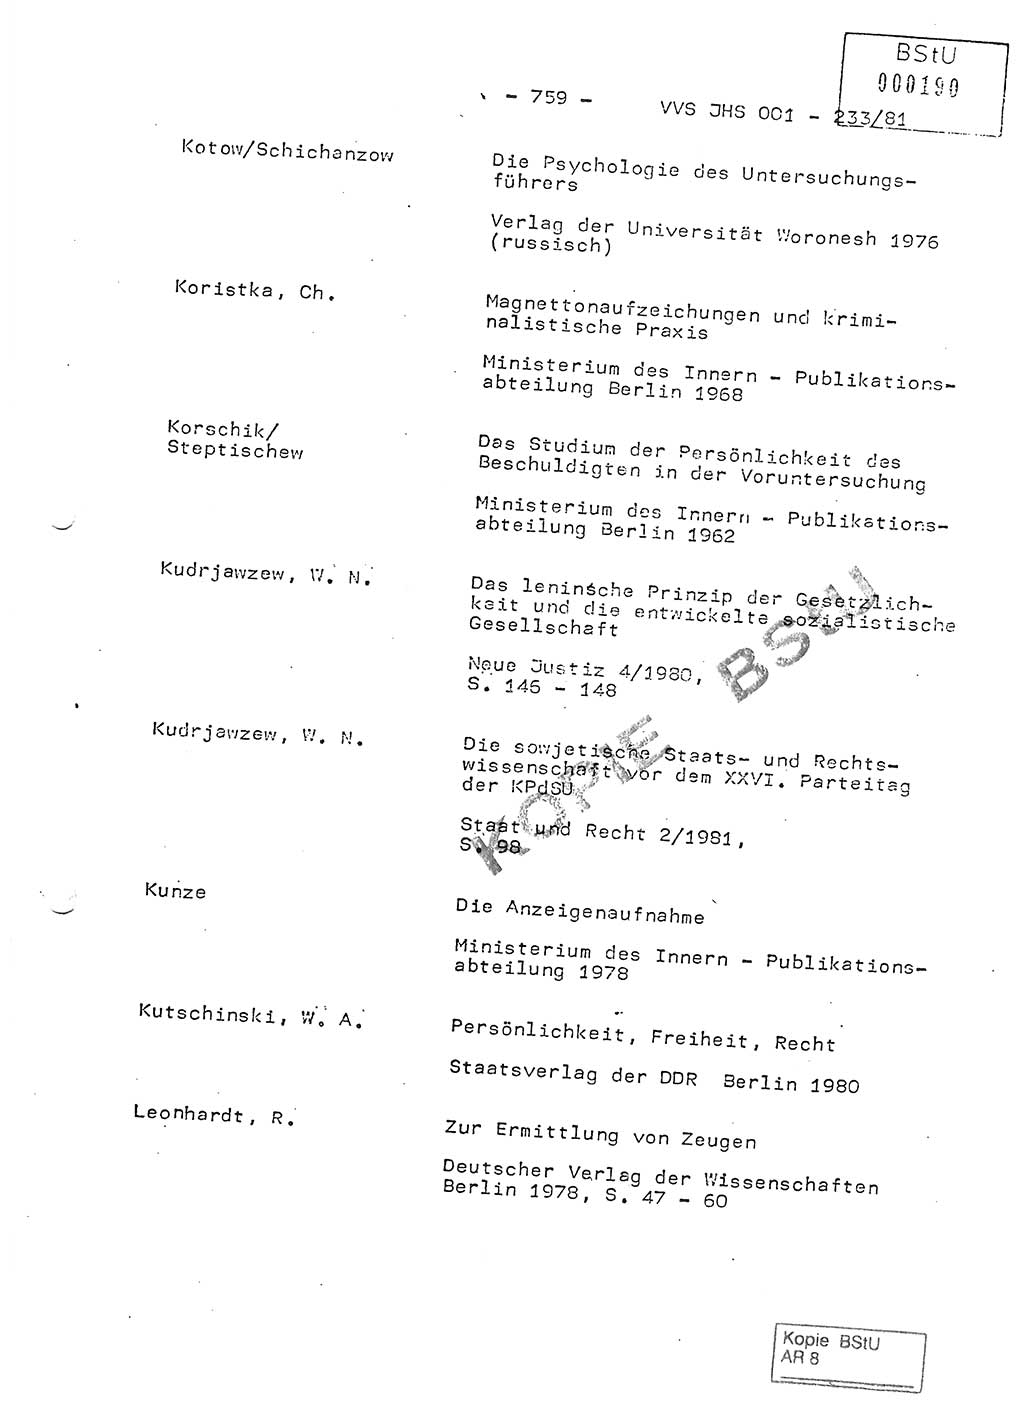 Dissertation Oberstleutnant Horst Zank (JHS), Oberstleutnant Dr. Karl-Heinz Knoblauch (JHS), Oberstleutnant Gustav-Adolf Kowalewski (HA Ⅸ), Oberstleutnant Wolfgang Plötner (HA Ⅸ), Ministerium für Staatssicherheit (MfS) [Deutsche Demokratische Republik (DDR)], Juristische Hochschule (JHS), Vertrauliche Verschlußsache (VVS) o001-233/81, Potsdam 1981, Blatt 759 (Diss. MfS DDR JHS VVS o001-233/81 1981, Bl. 759)